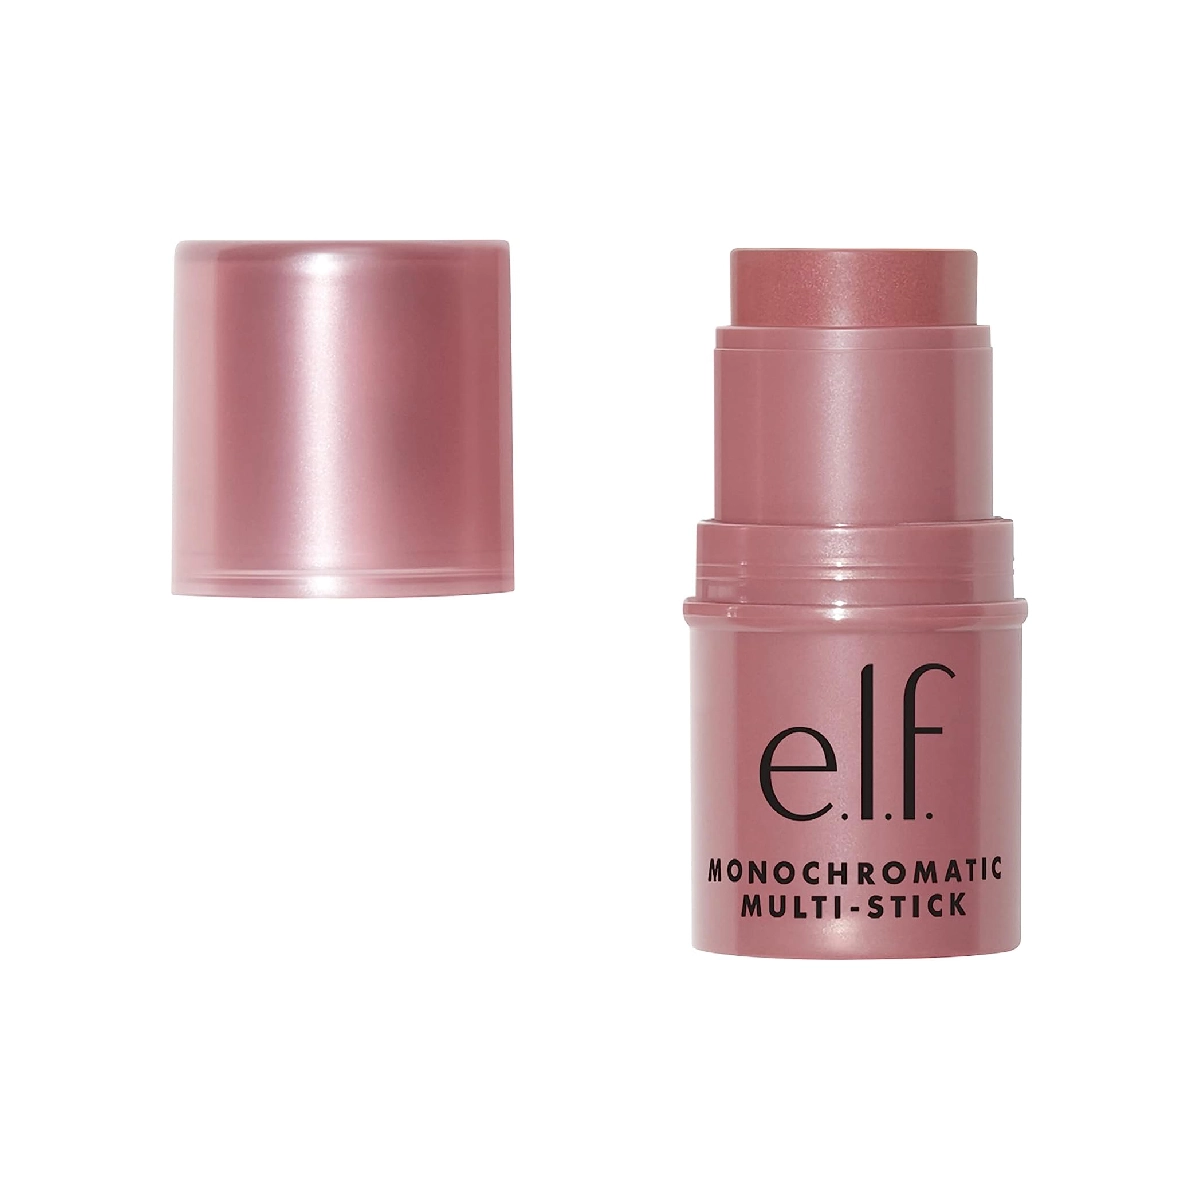 e.l.f. Monochromatic Multi Stick - A versatile makeup stick in a sleek design.